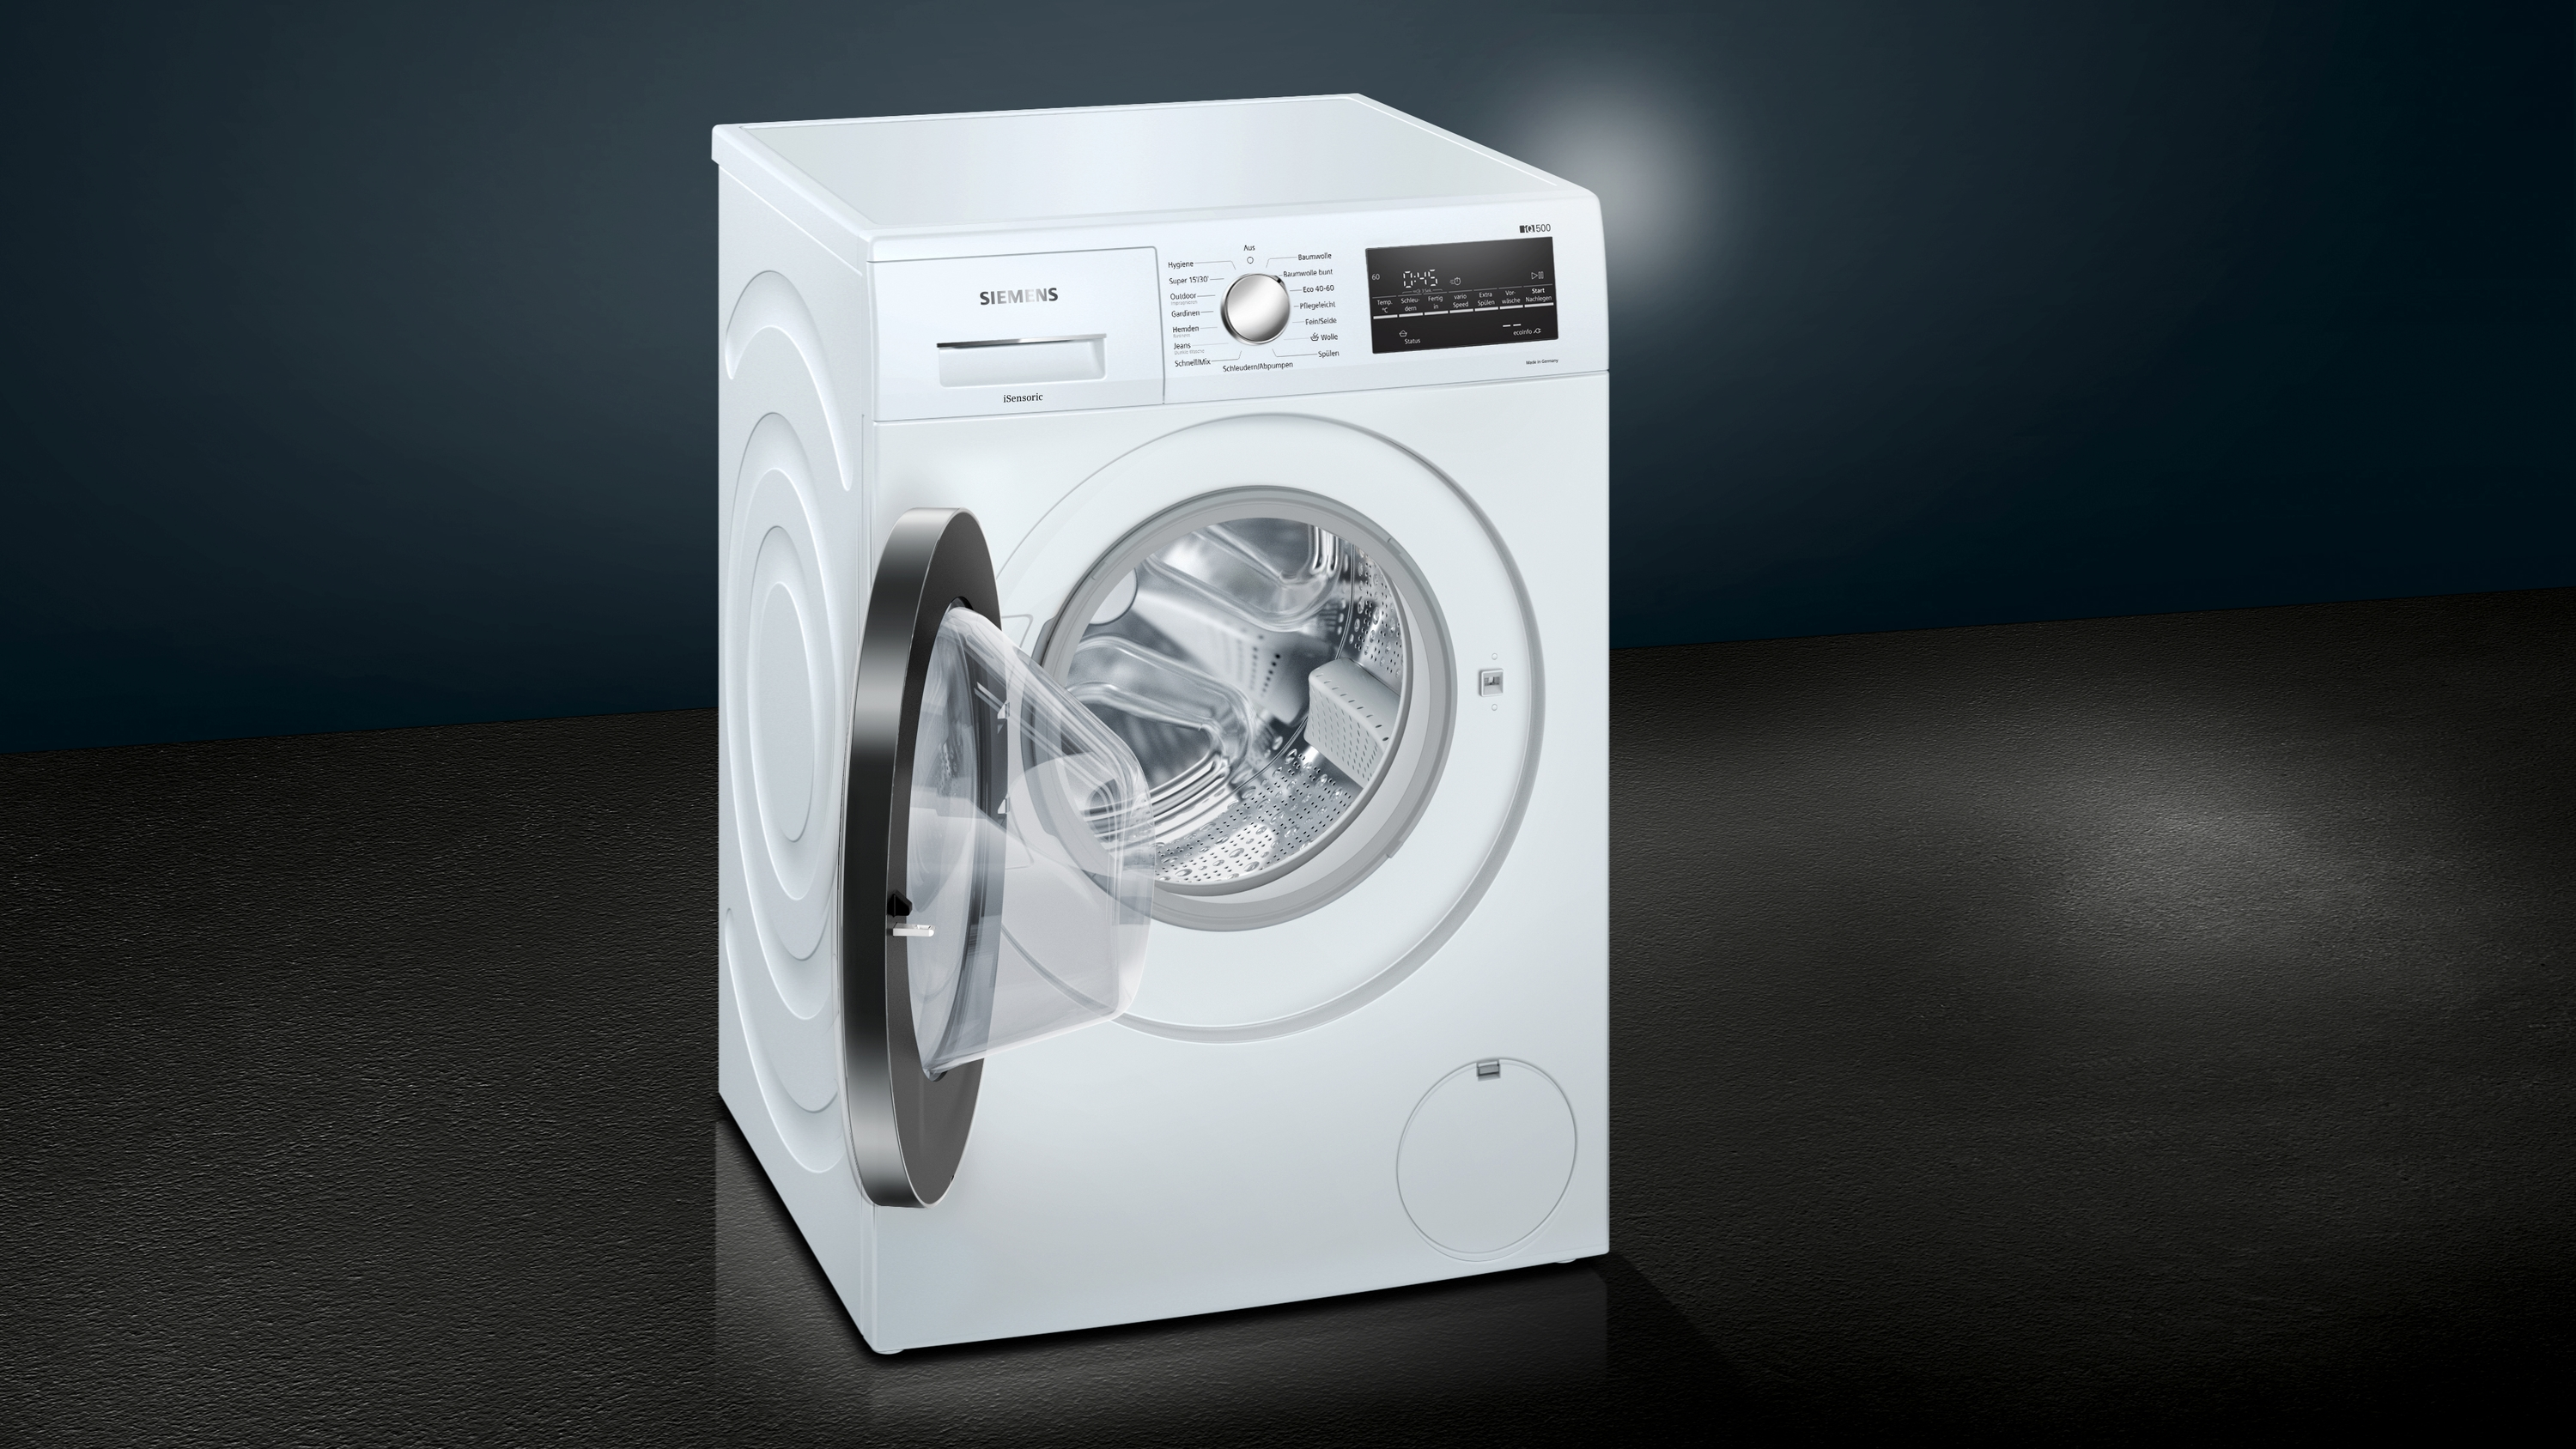 SIEMENS WM14G400 Waschmaschine (8 1400 U/Min., kg, C)